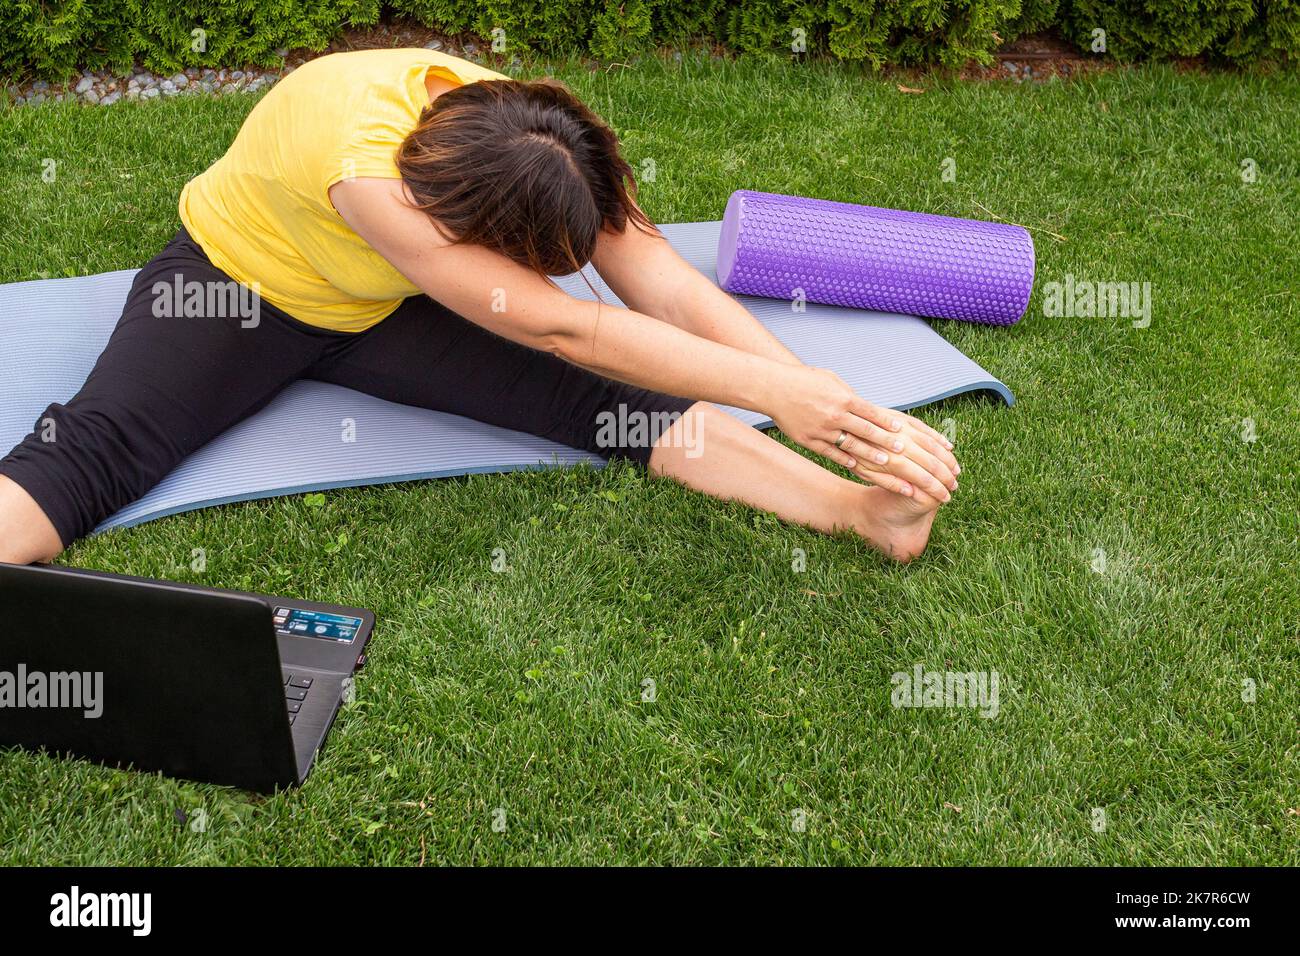 Mujer acostada en una colchoneta de yoga haciendo ejercicios de estiramiento Tomando una clase en línea en un prado en verano Foto de stock